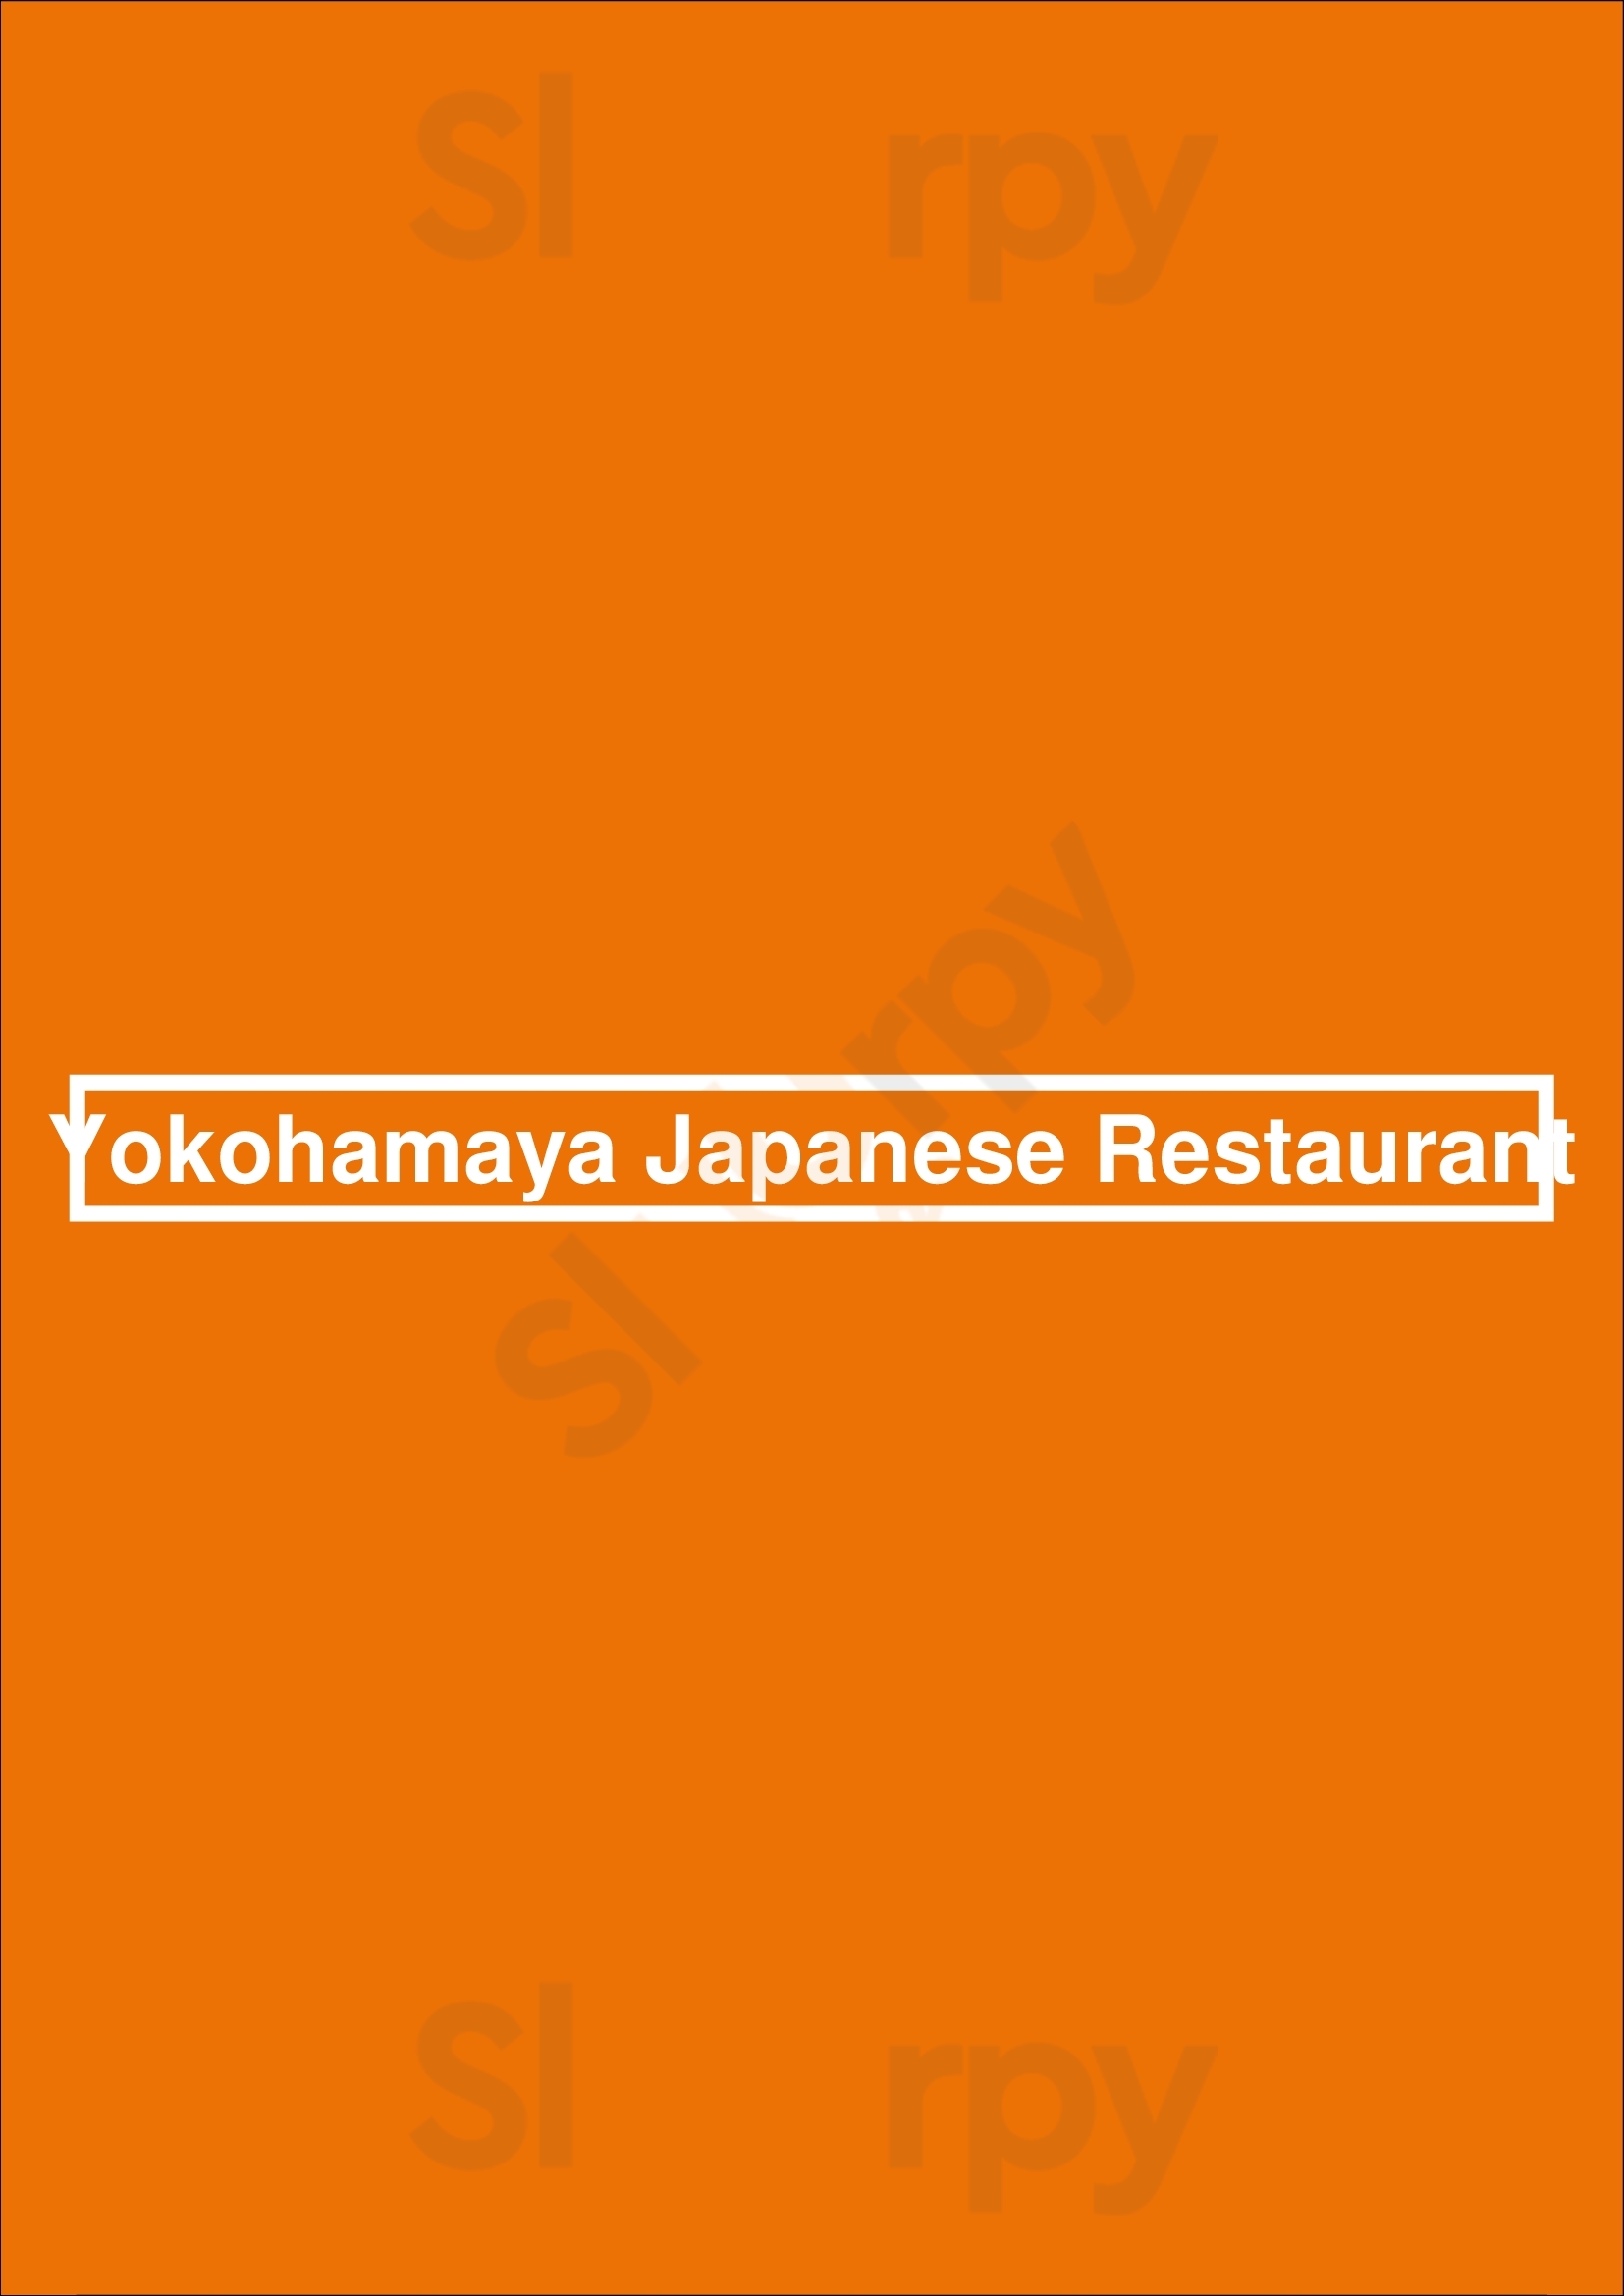 Yokohamaya Japanese Restaurant Cypress Menu - 1